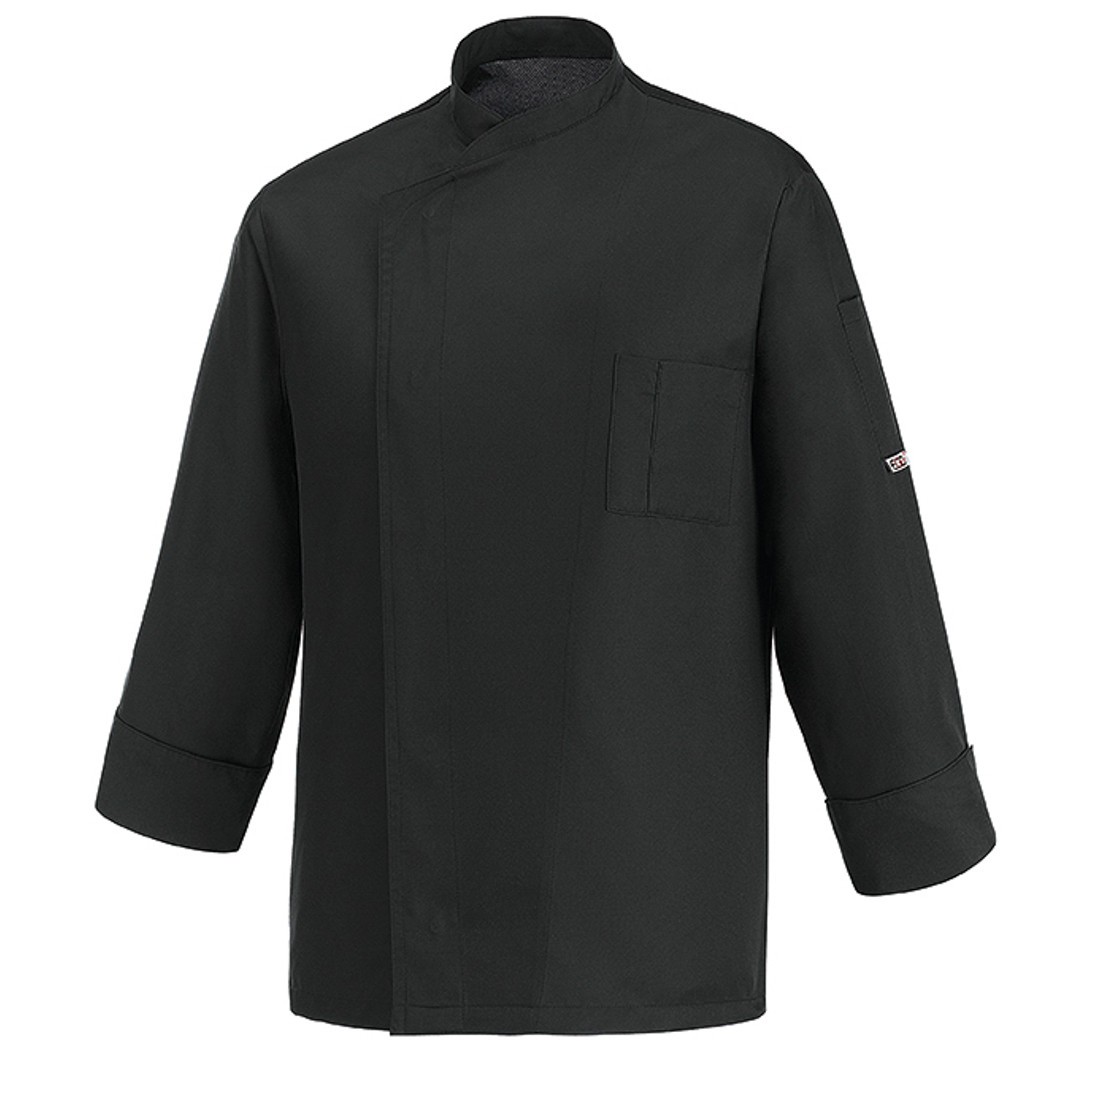 Veste chef Ottavio, lyocell / polyester - Les vêtements de protection